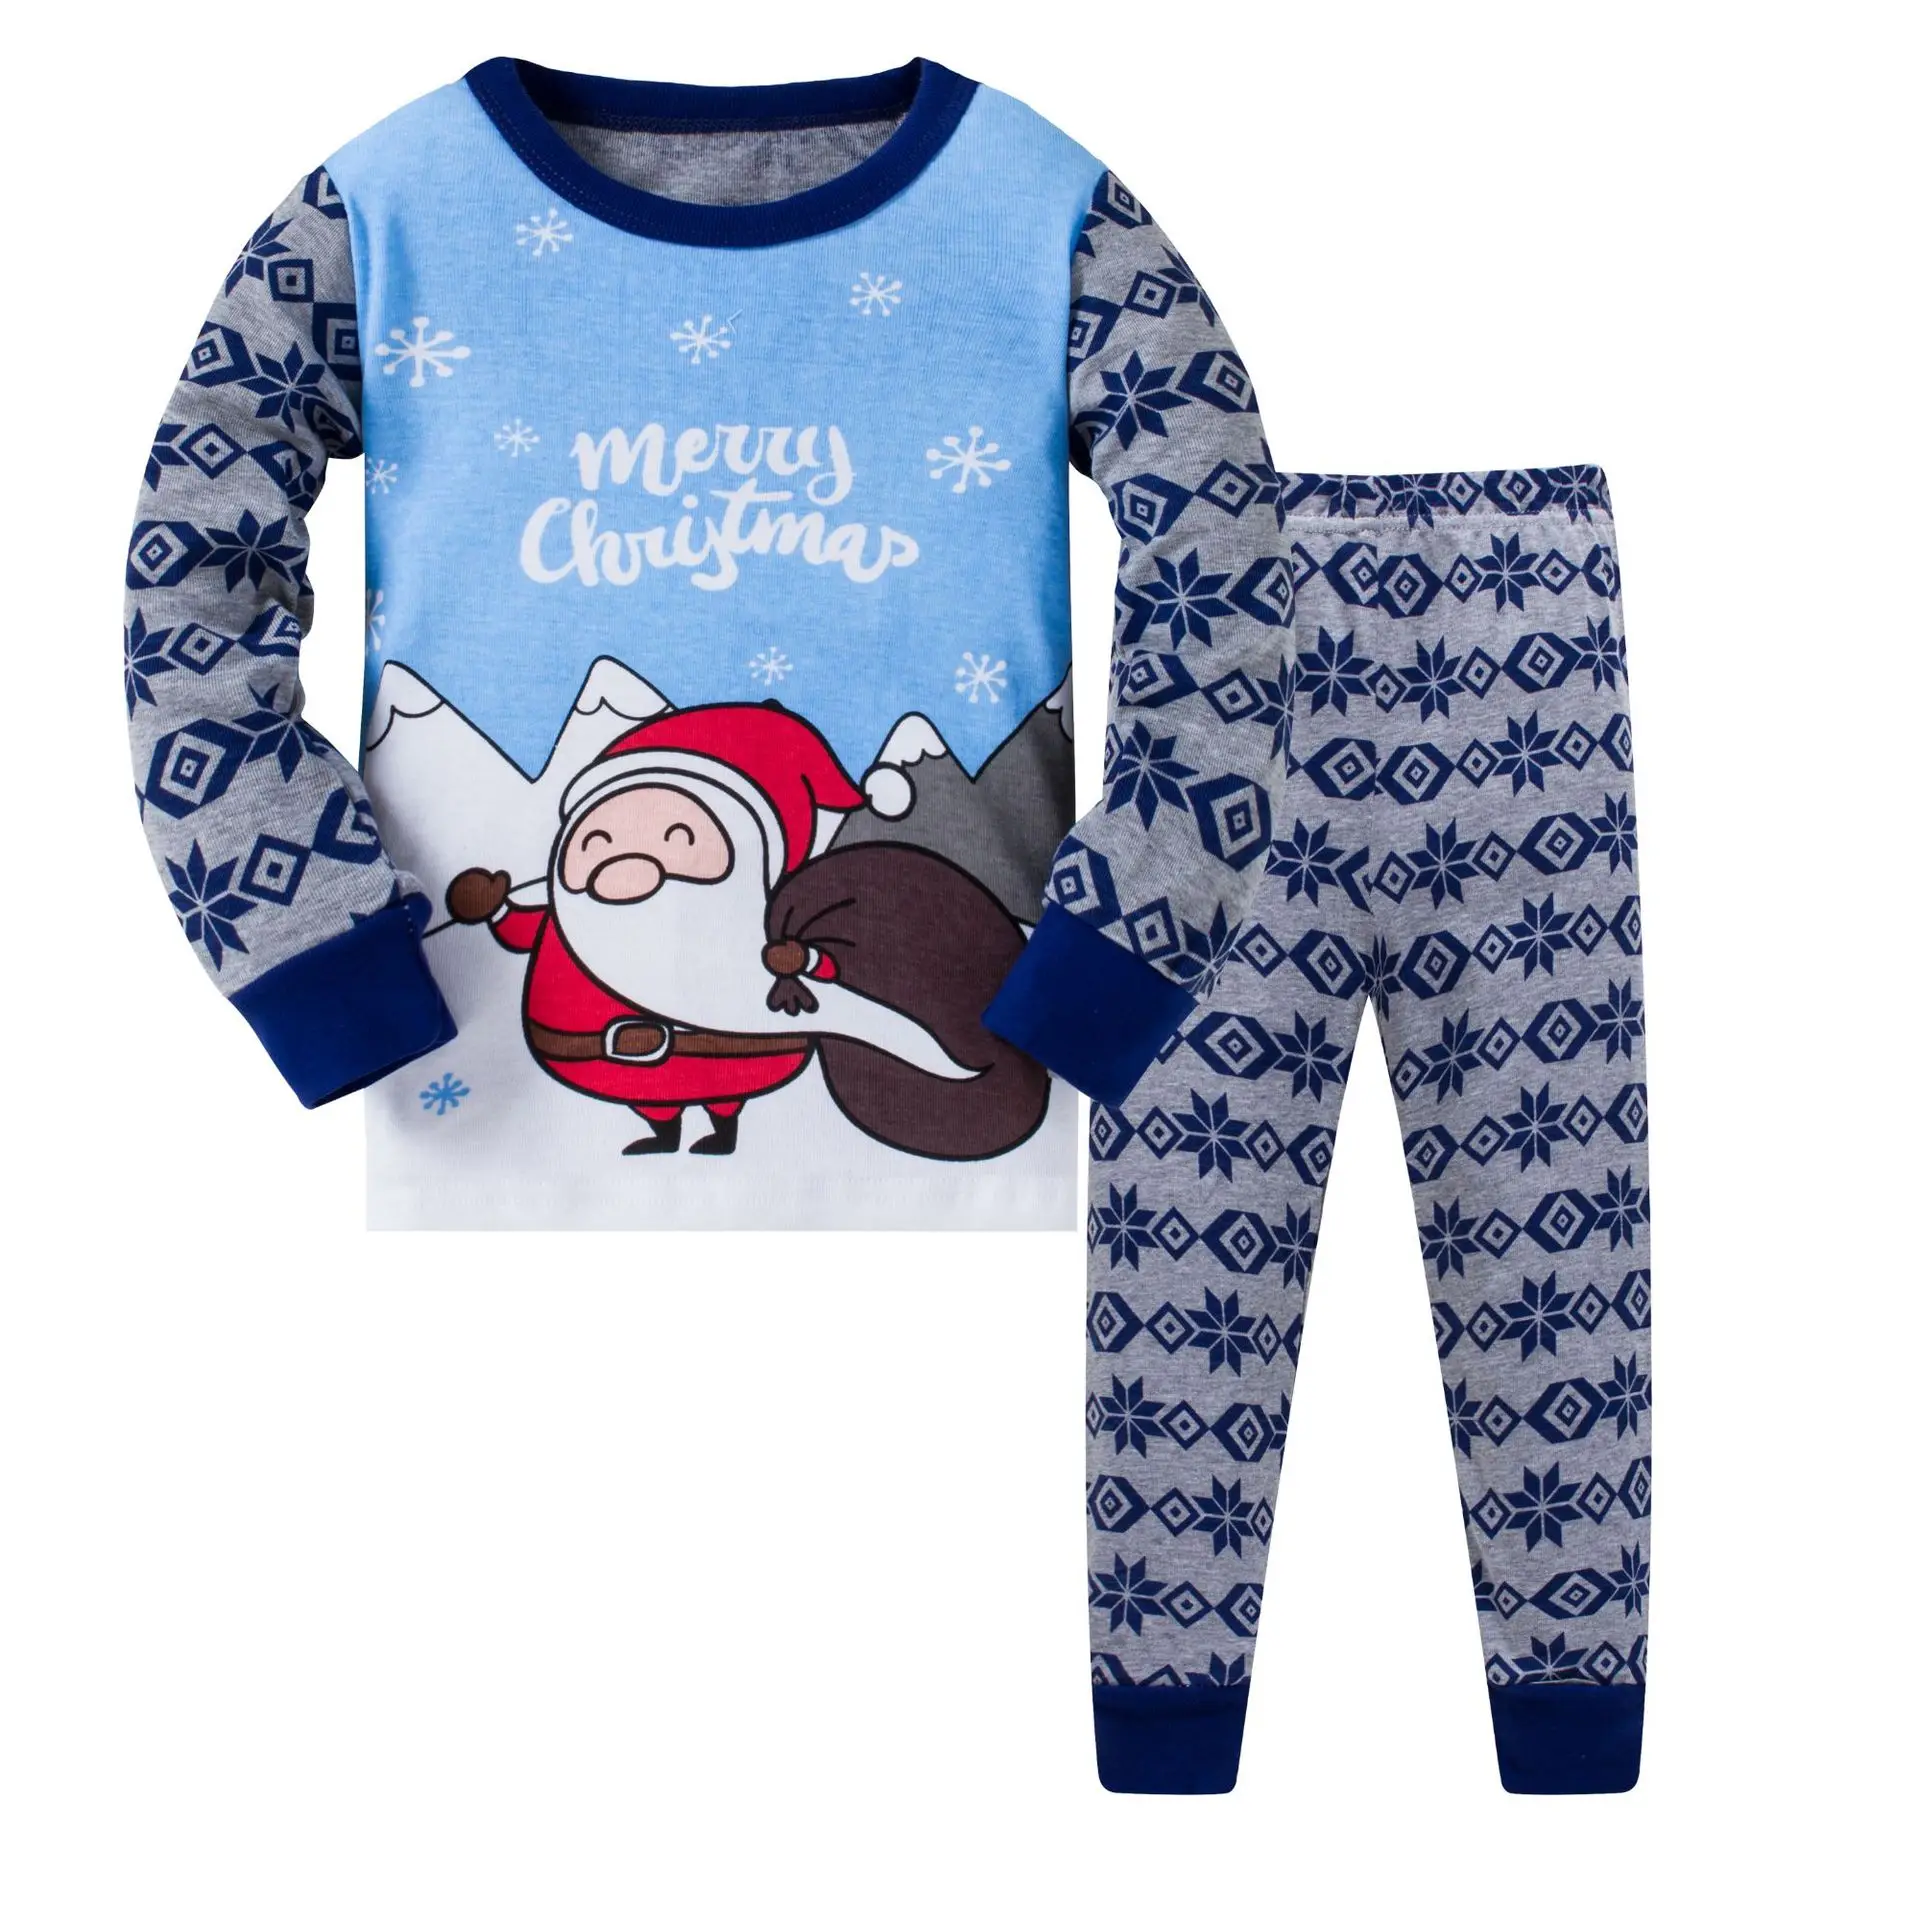 Длинные пижамы для маленьких девочек и мальчиков детская хлопковая одежда для сна с изображением Санта-Клауса «Веселые чиристамы» новые детские пижамы для детей 3, 4, 5, 6, 7, 8 лет - Цвет: 2pcs bule